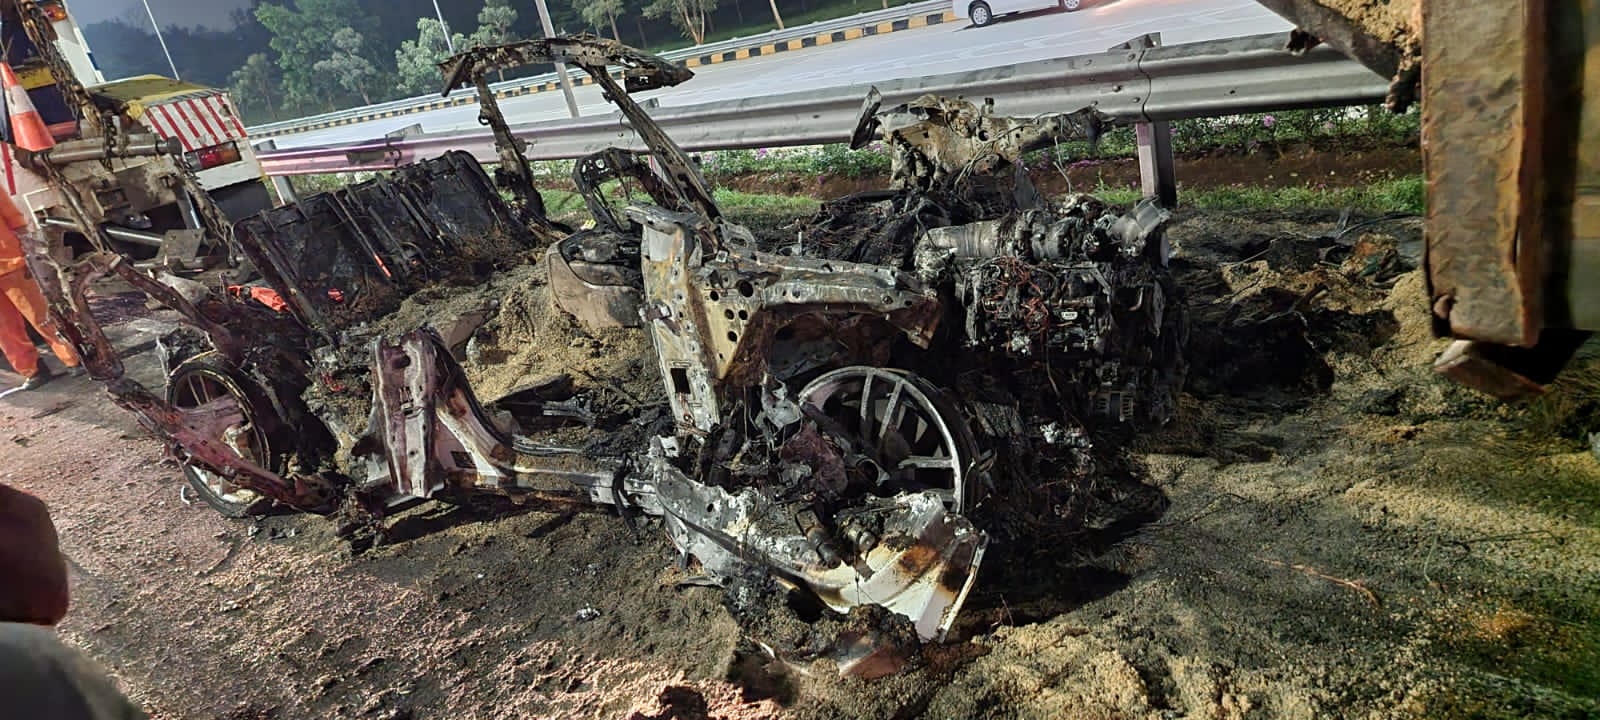 Kecelakaan Mobil Mewah Porsche, Tabrak Truk Hingga Hangus Terbakar di Tol Jagorawi, Kondisi Pengemudi Tragis